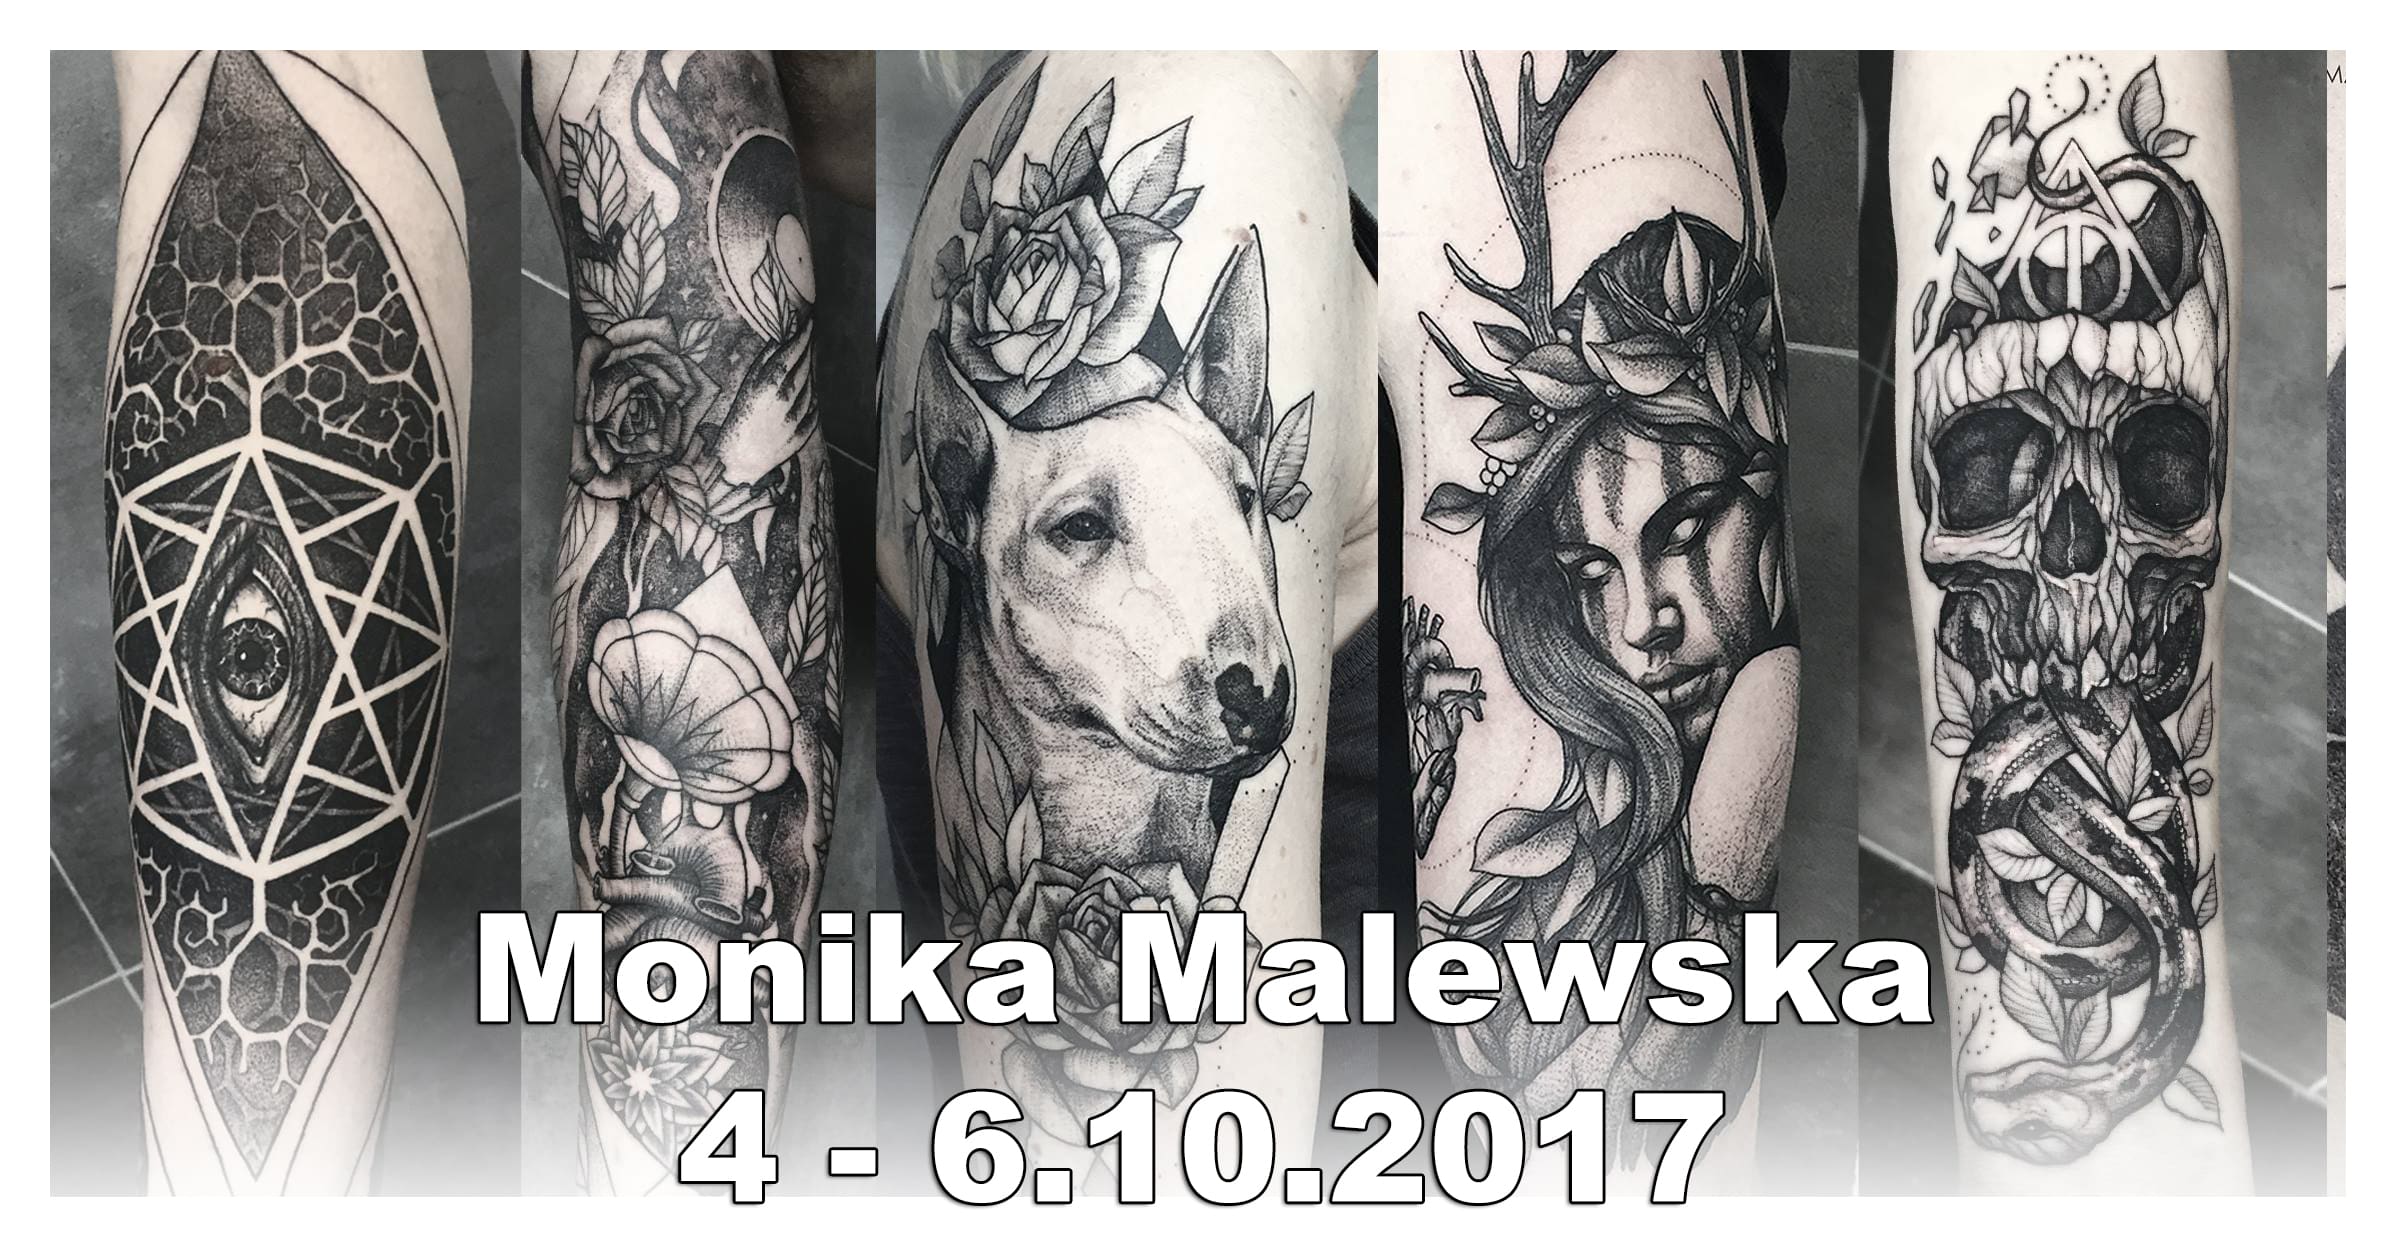 Monika Malewska